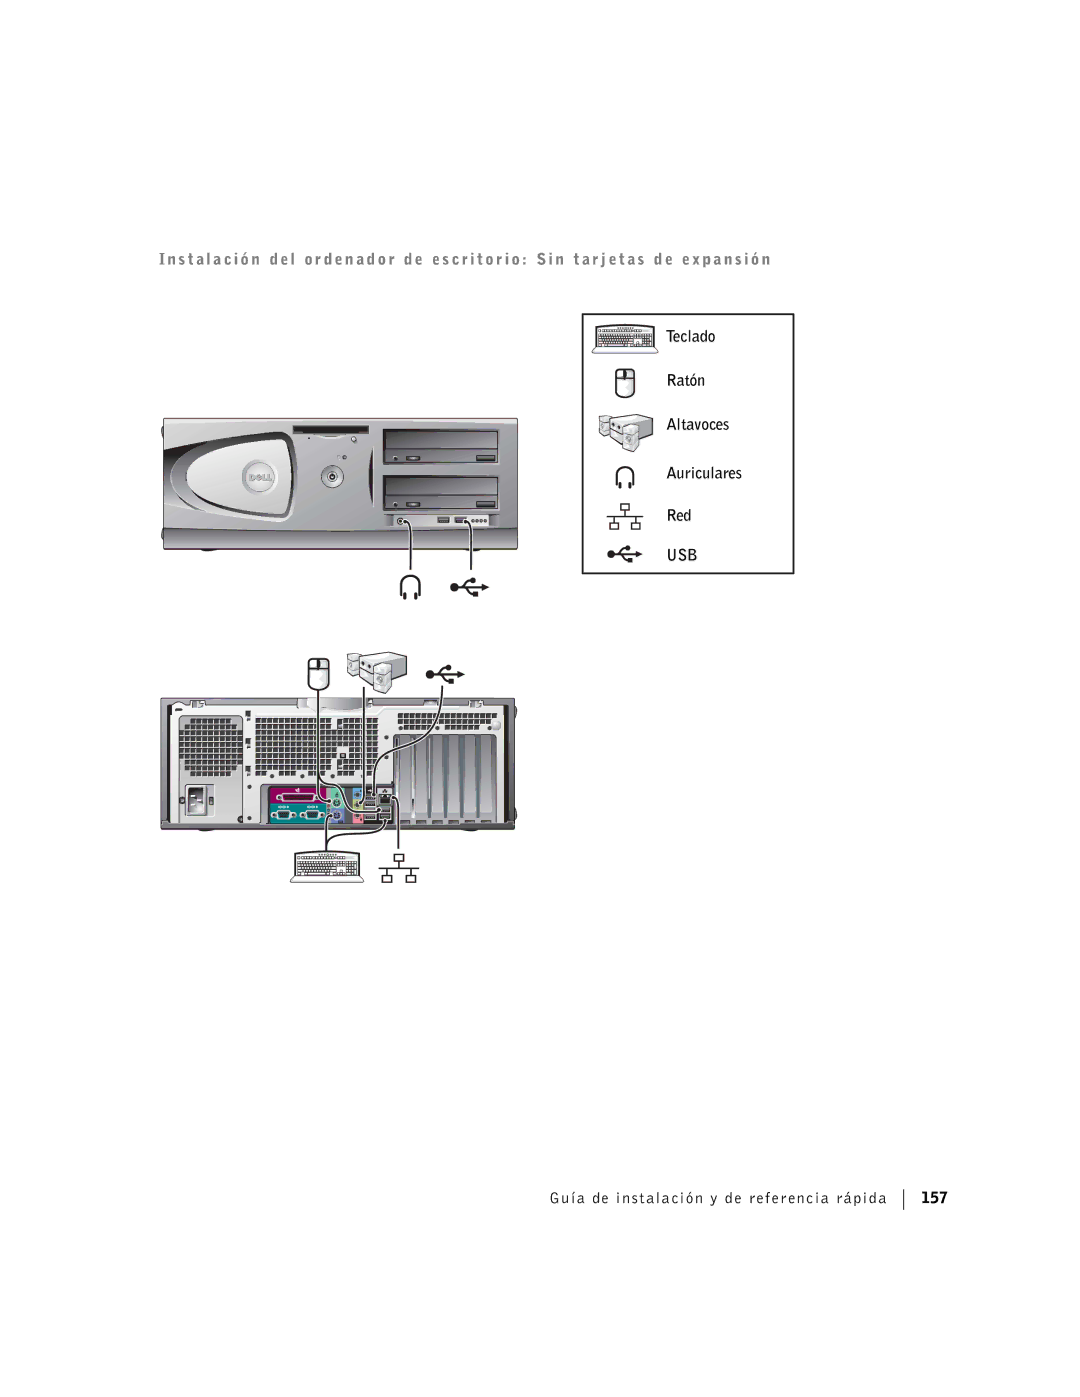 Dell F0276 manual Teclado Ratón Altavoces Auriculares Red, Guía de instalación y de referencia rápida 157 